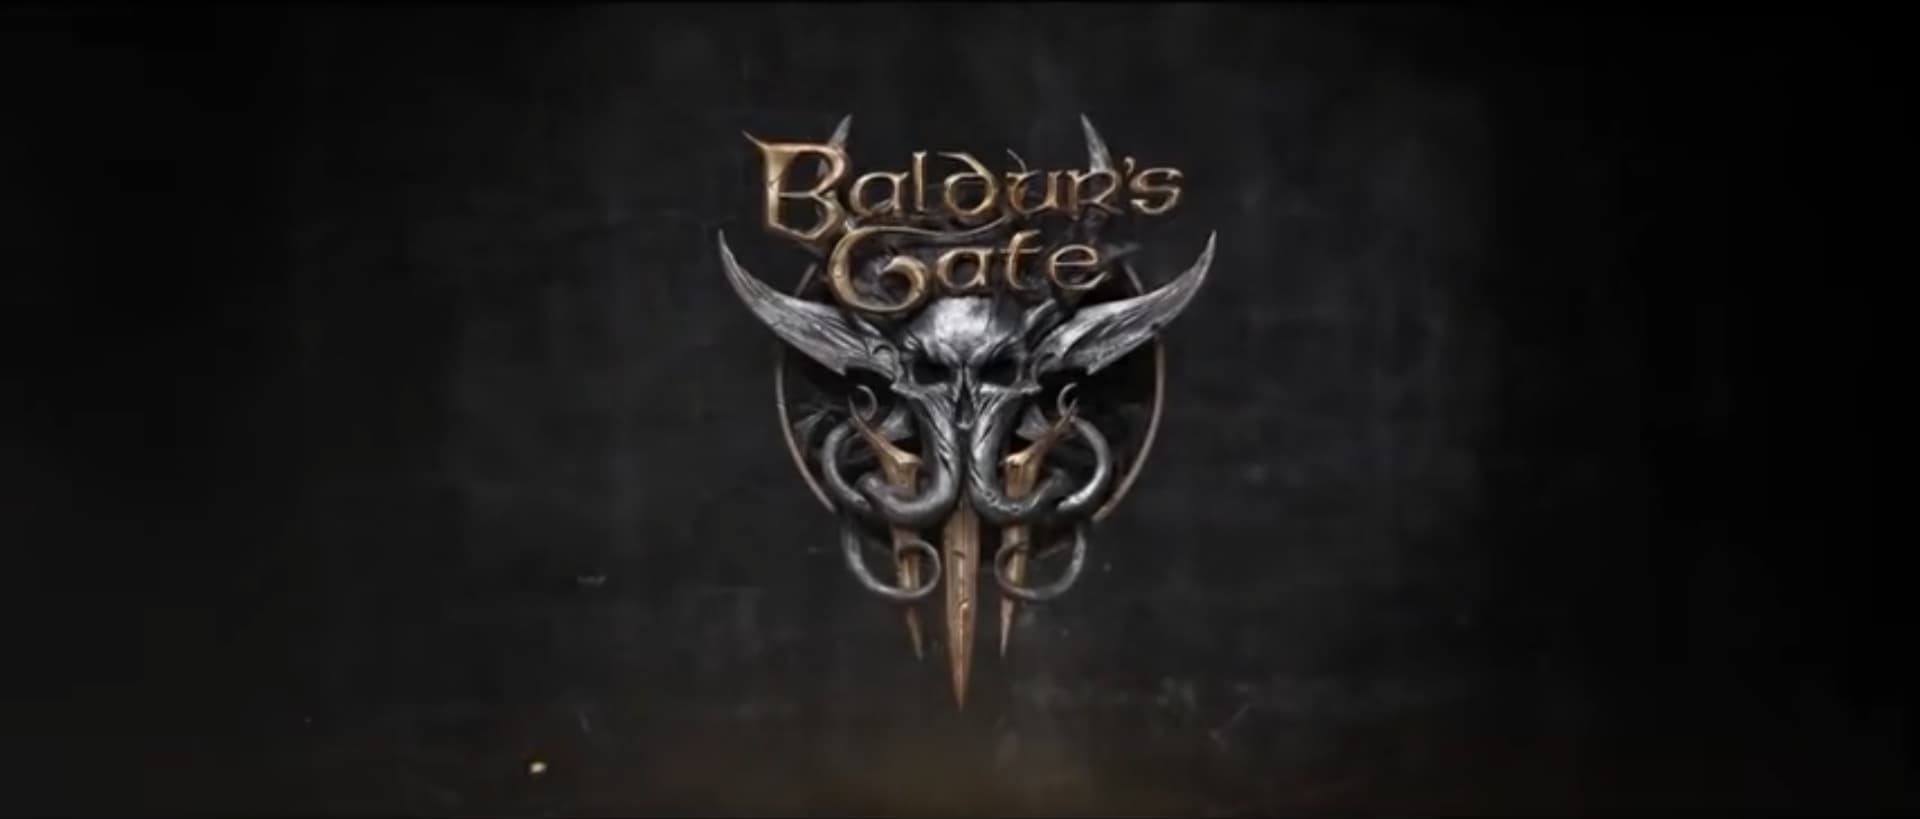 معرفی بازی Baldurs Gate 3 2020